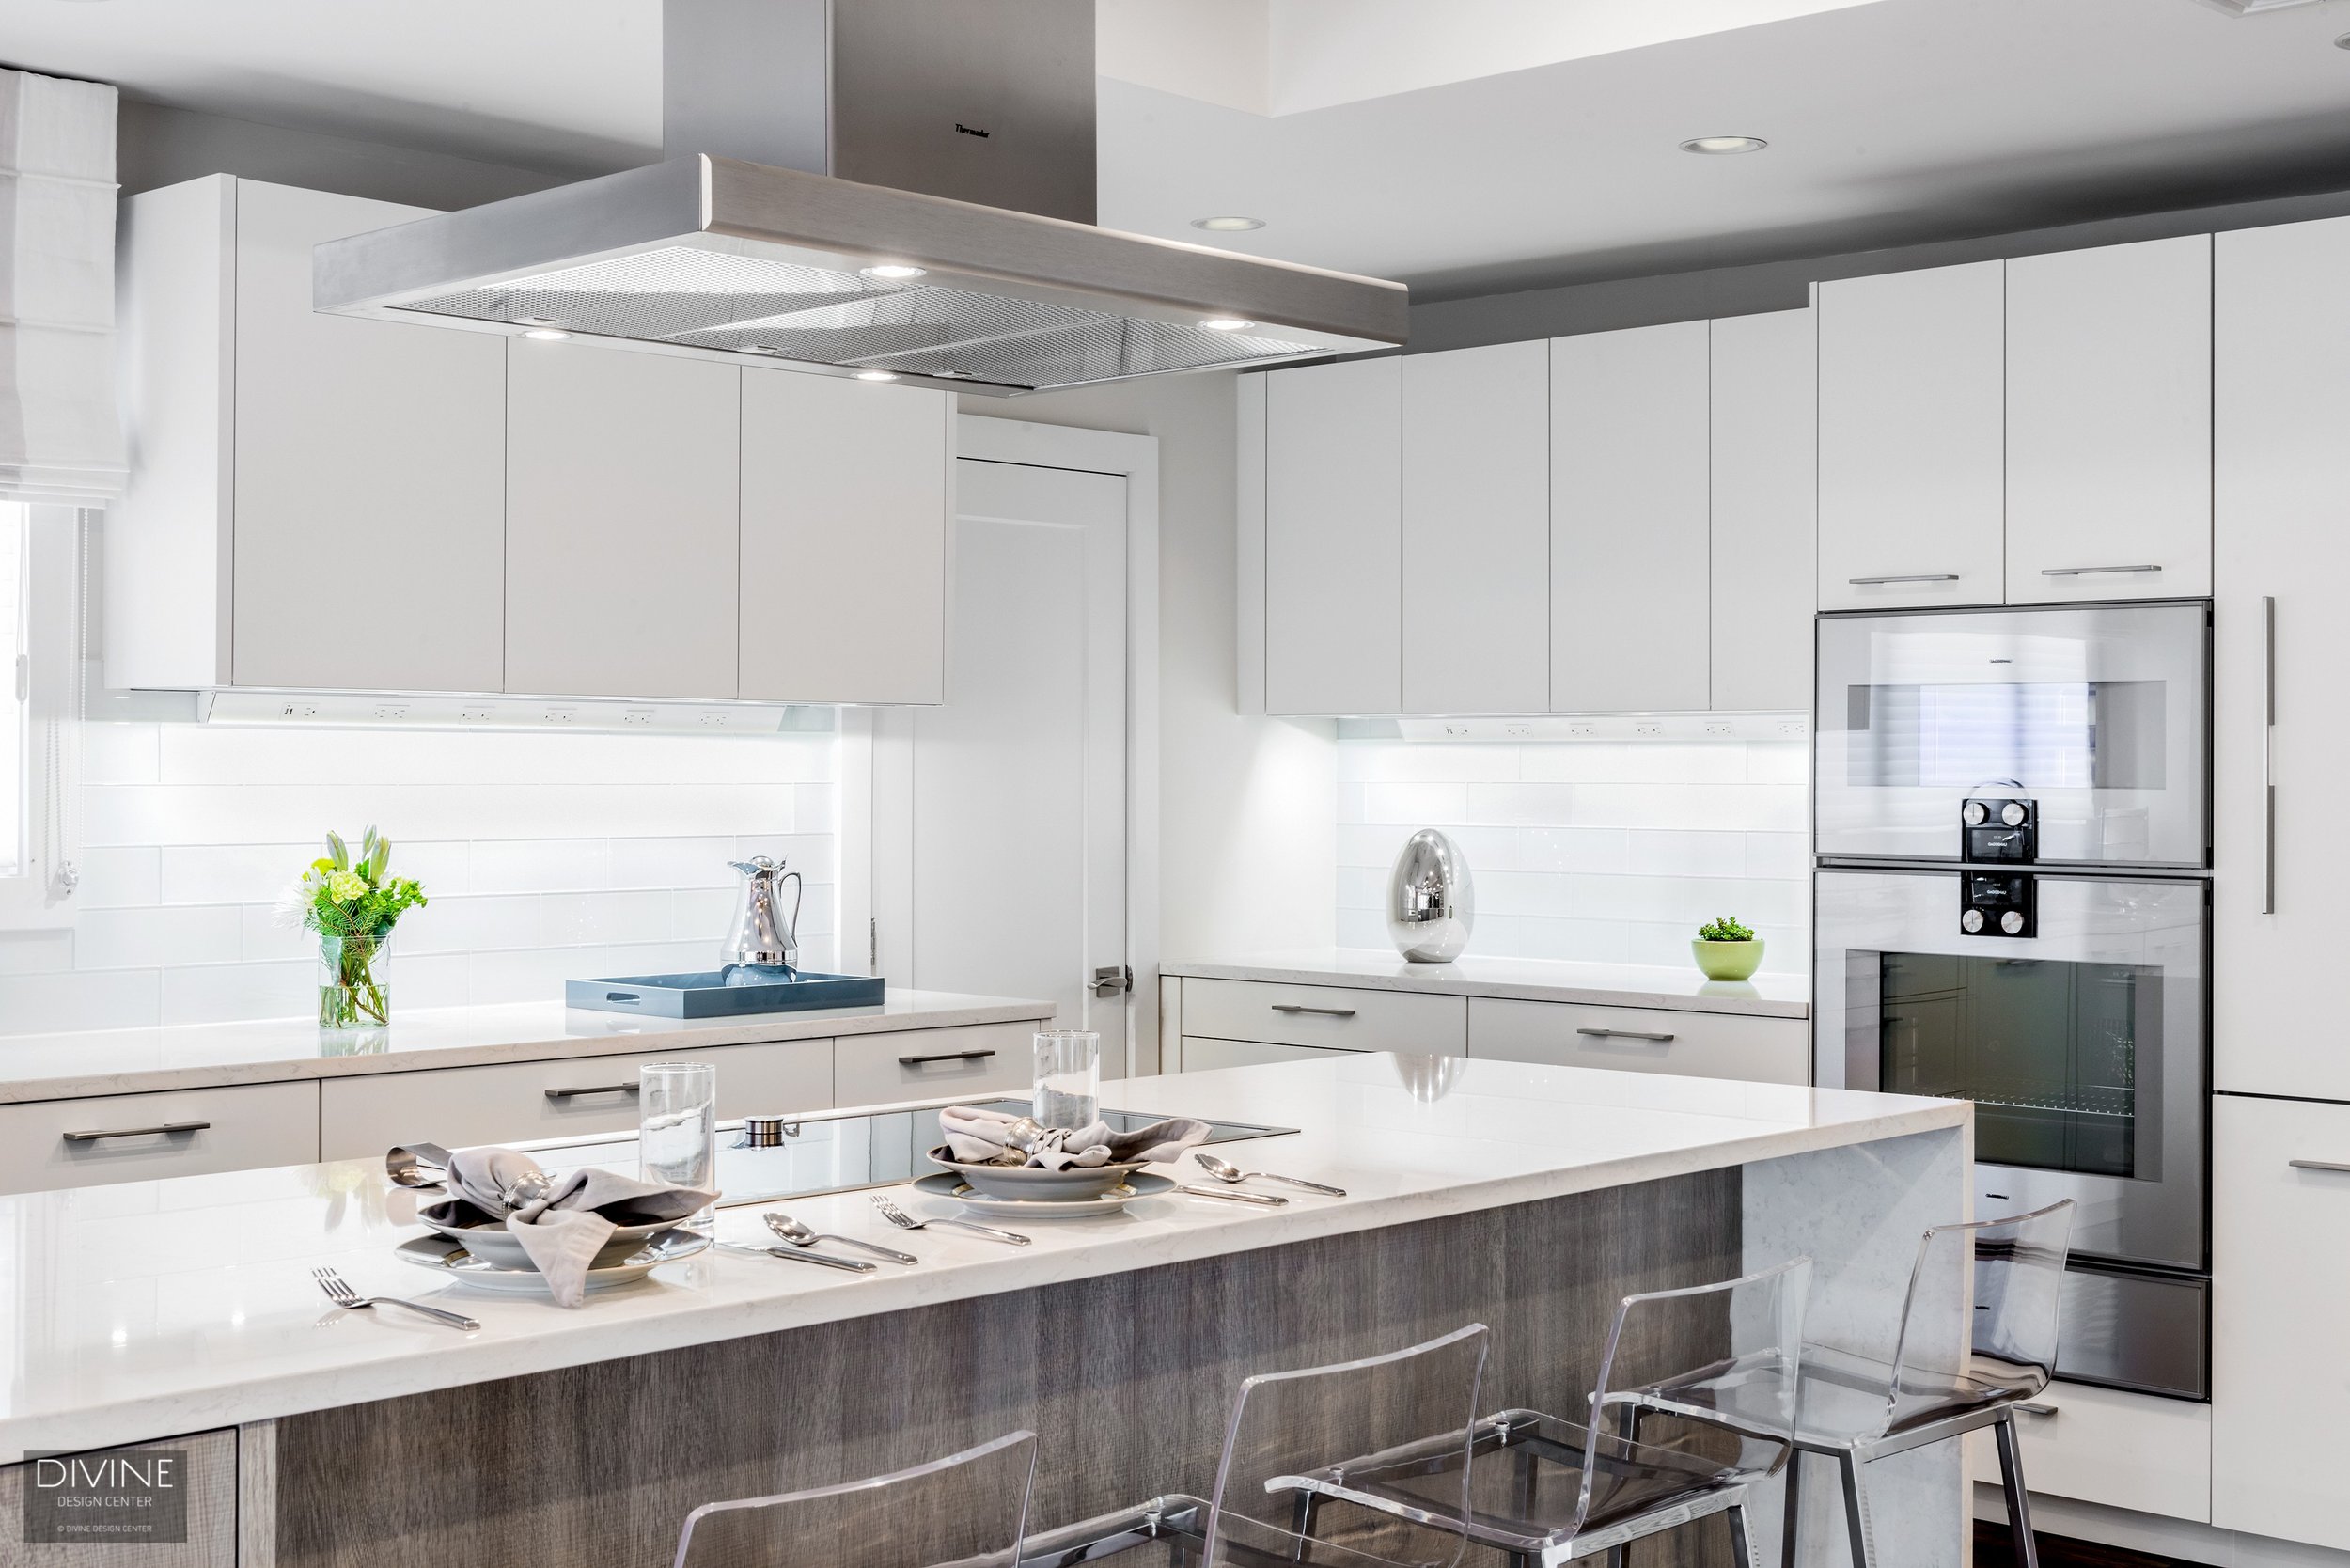 9.divine-design-center-Newton Contemporary Kitchen with Gaggenau Appliances.jpg